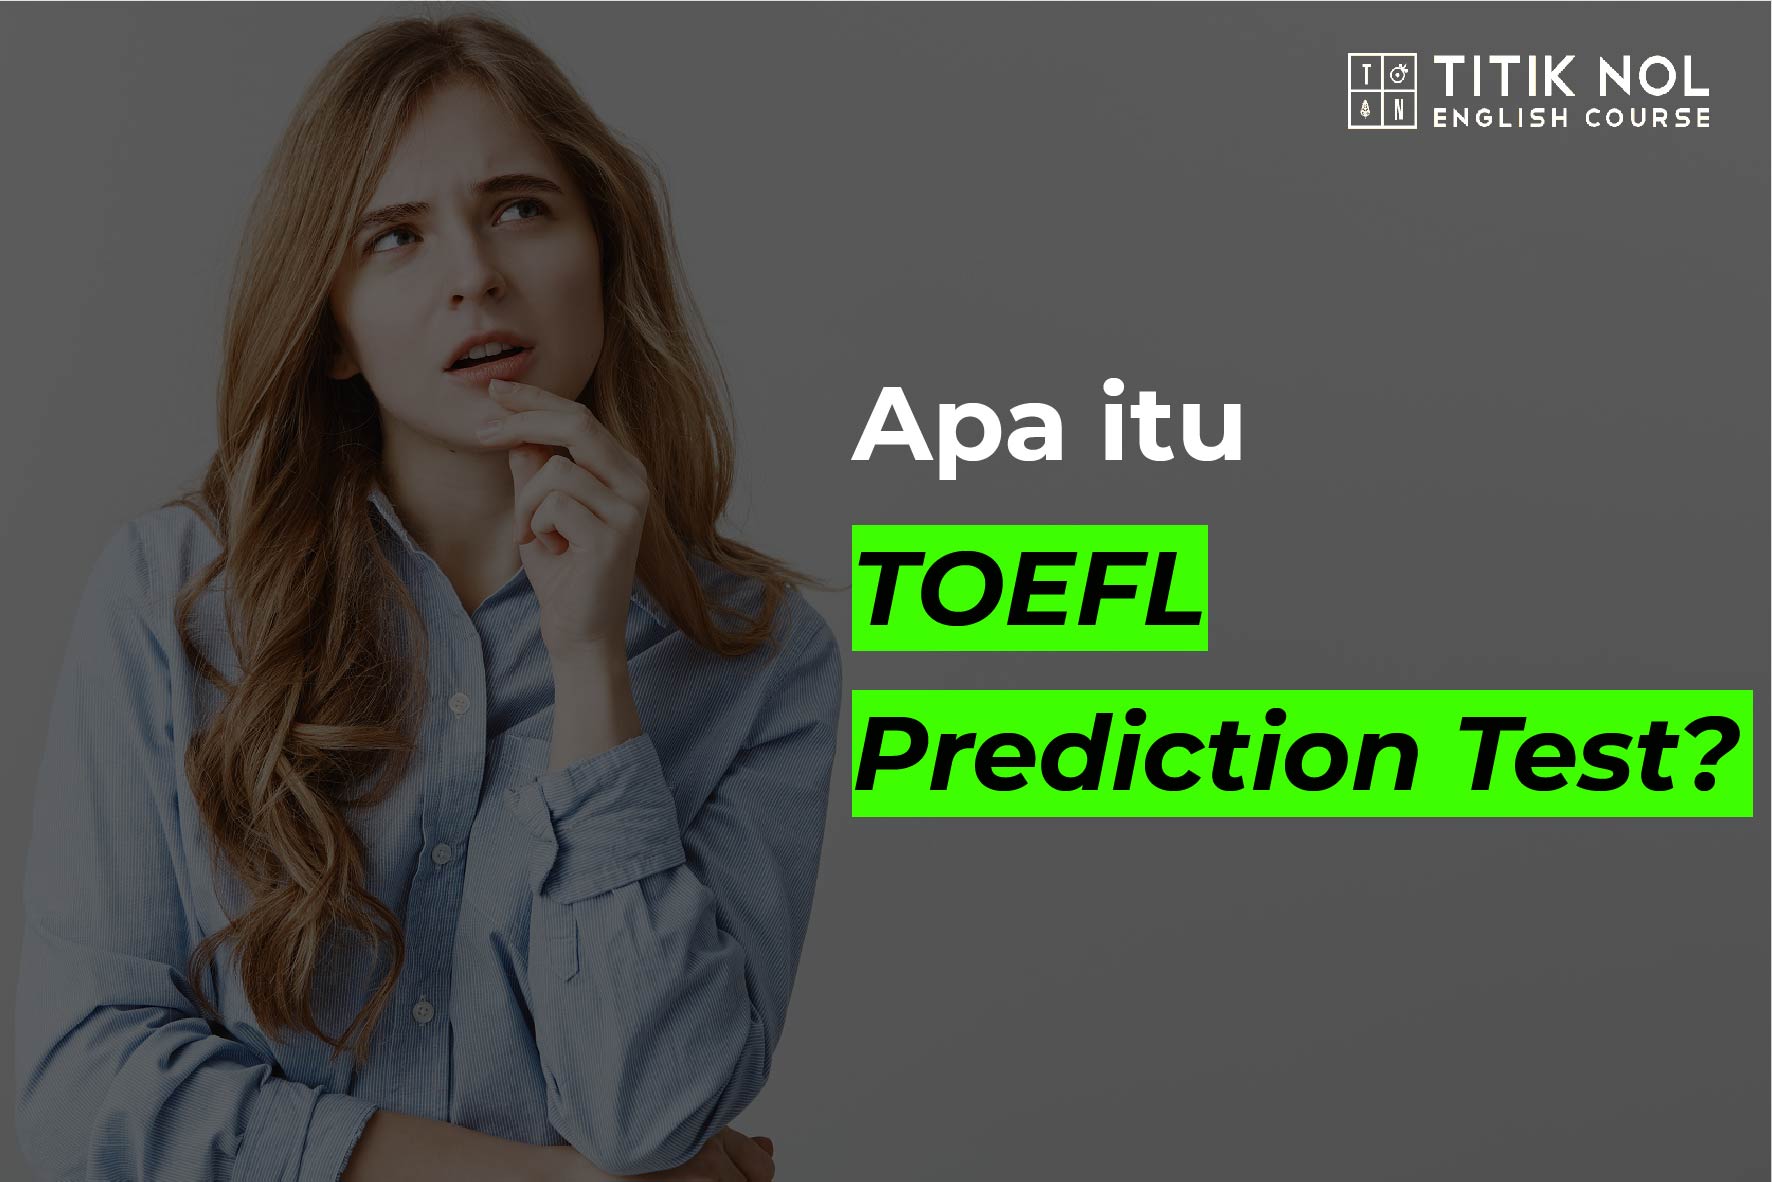 Apa itu TOEFL Prediction Test?